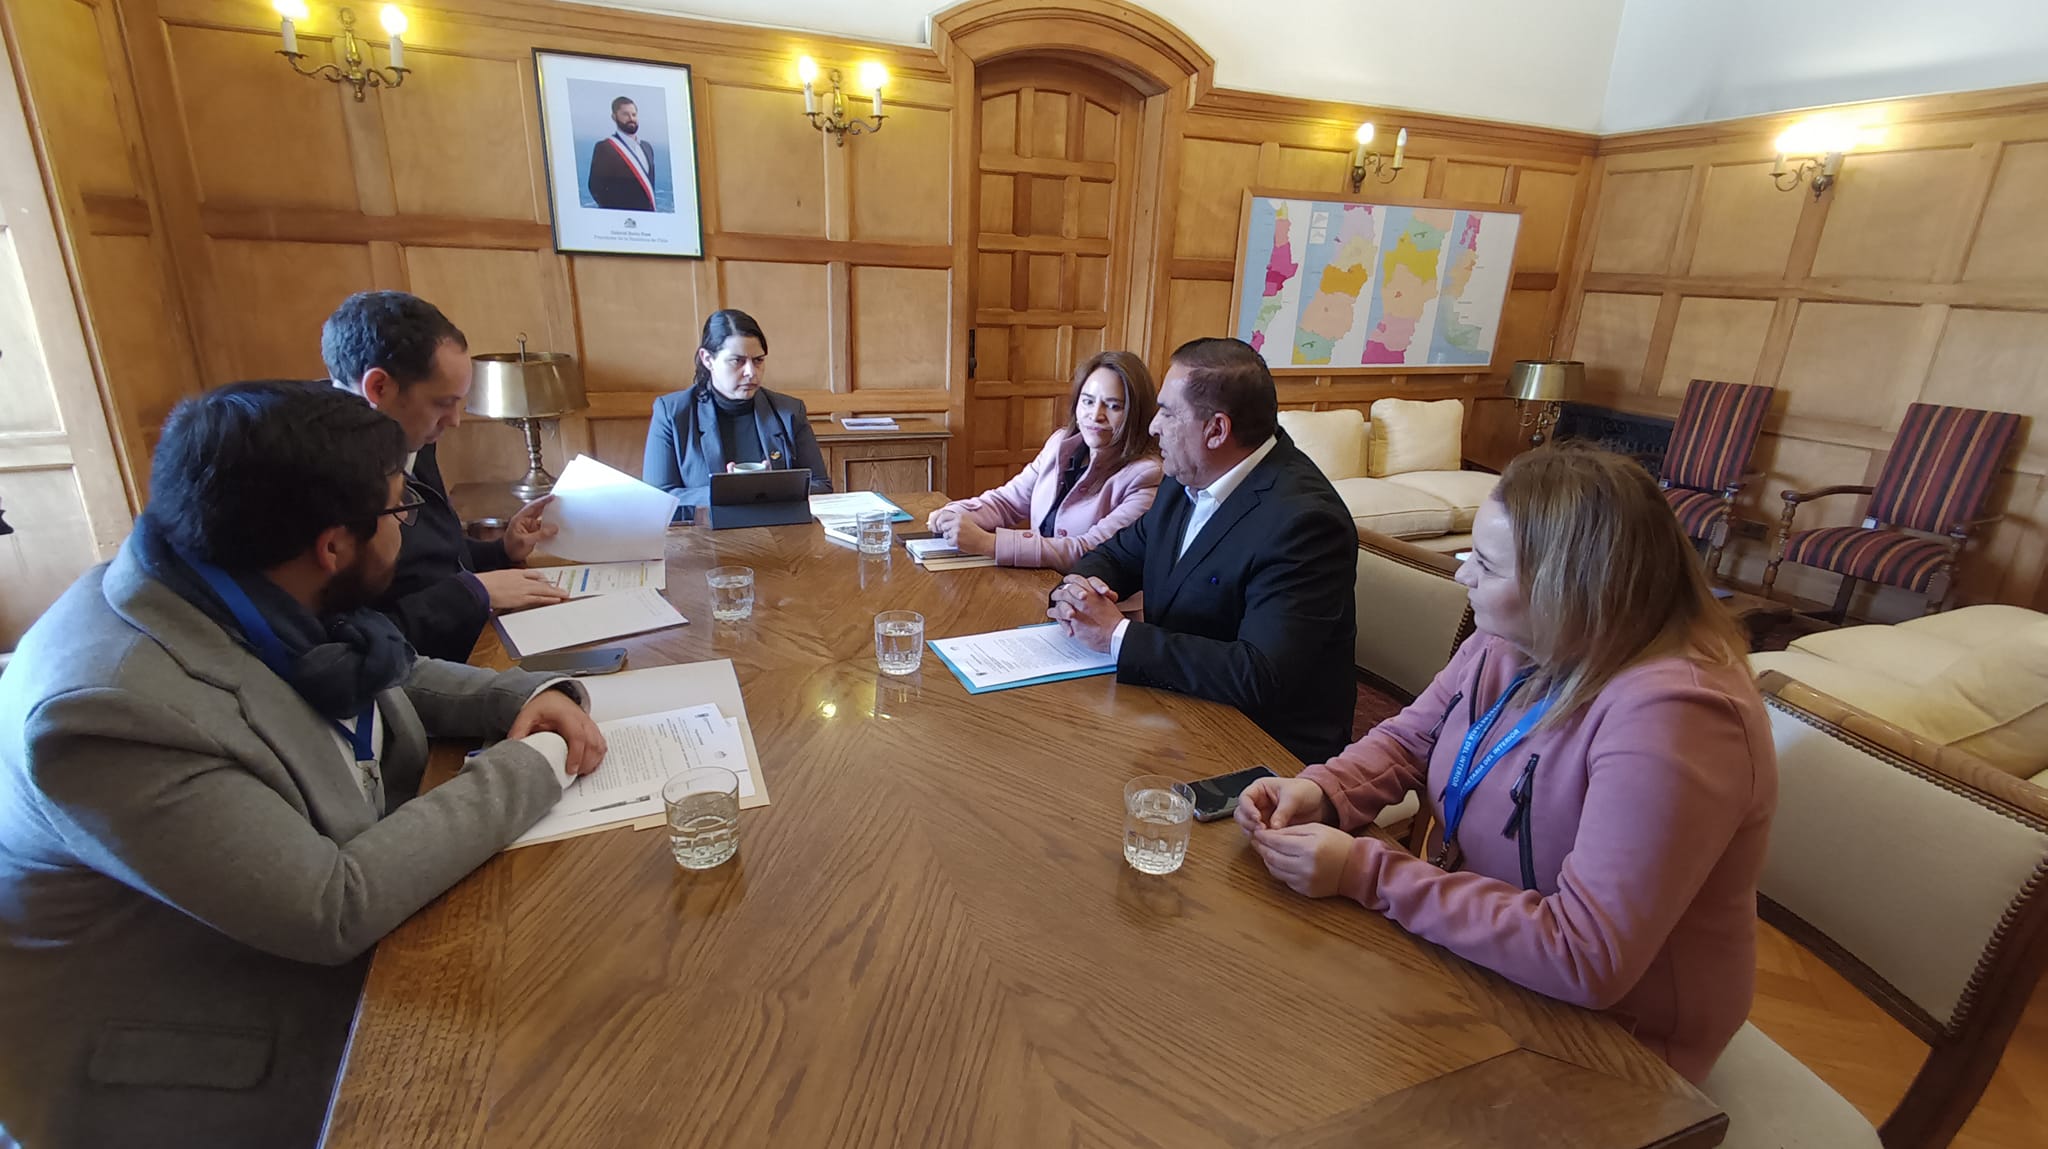 Reunión entre autoridades / Ilustre Municipalidad de Antuco